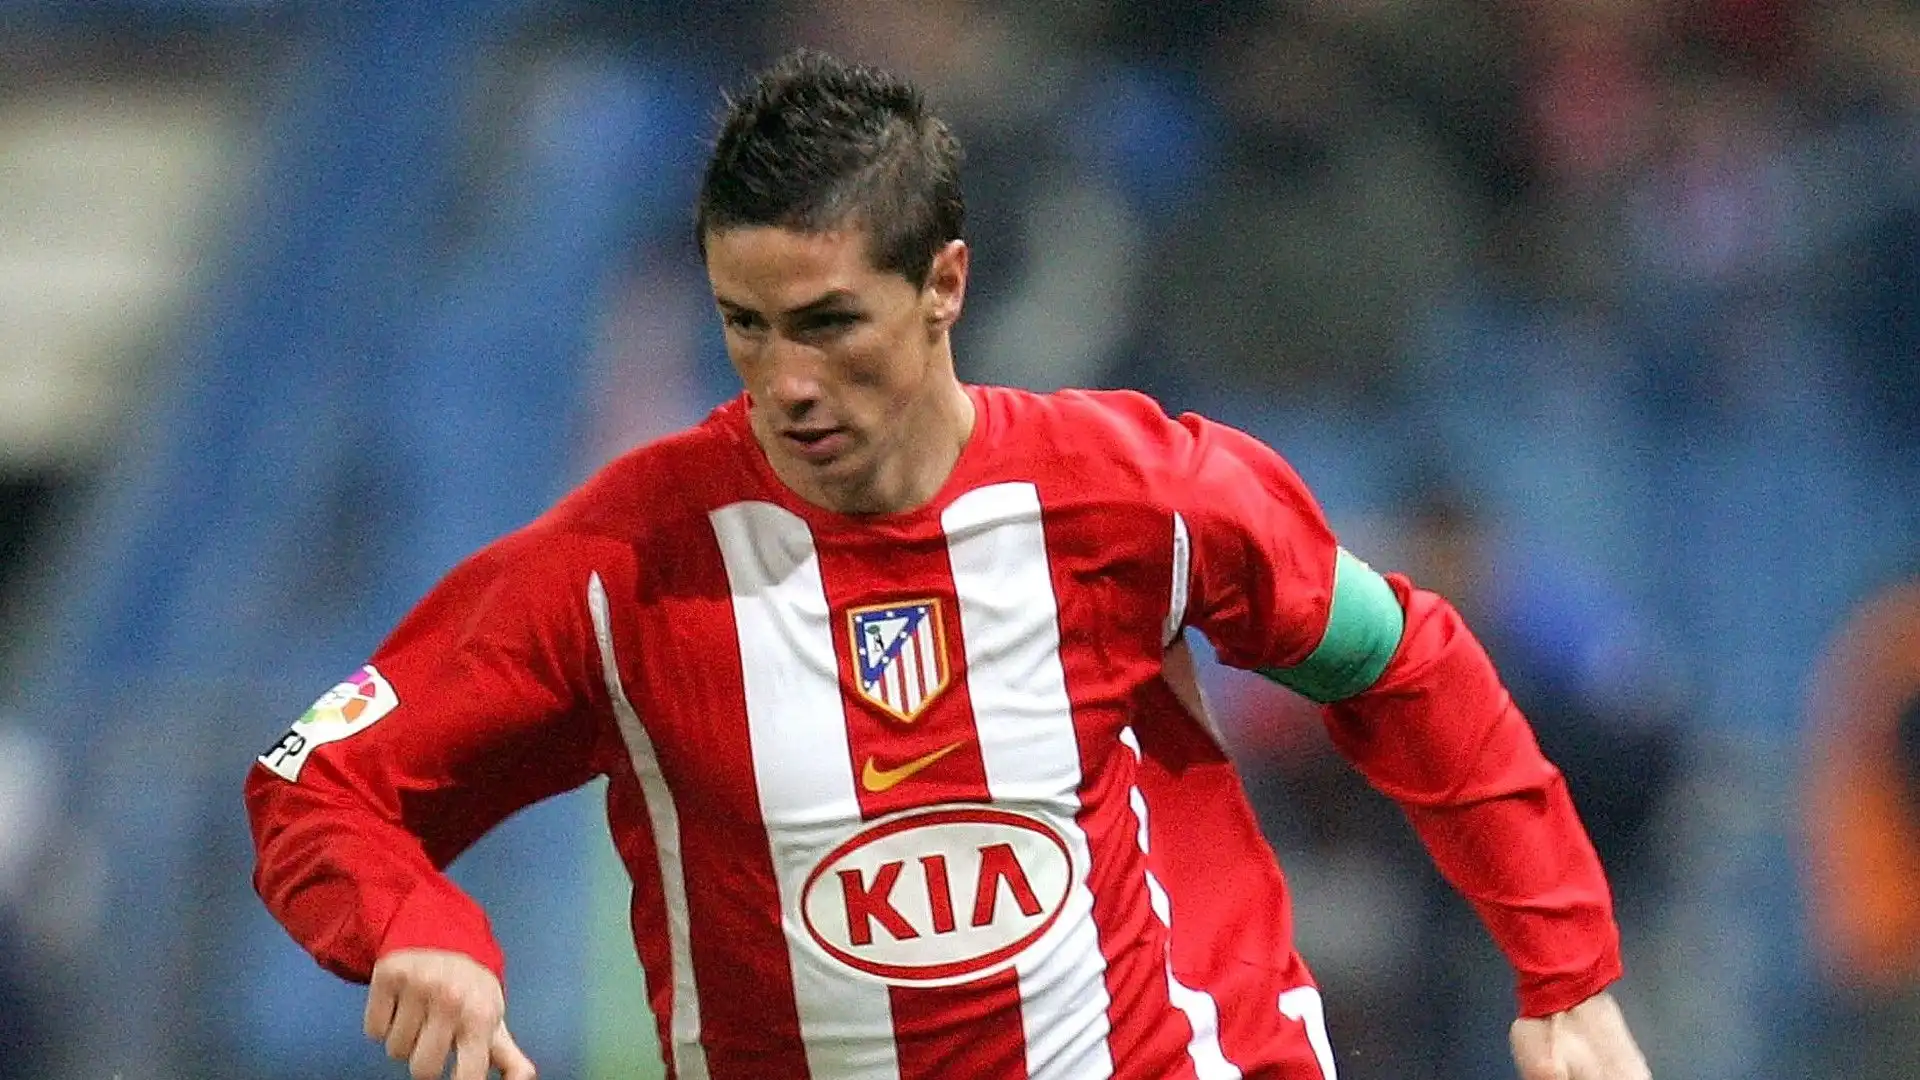 9- Fernando Torres: stagione 2007/2008 al Liverpool per 38,00 milioni di euro